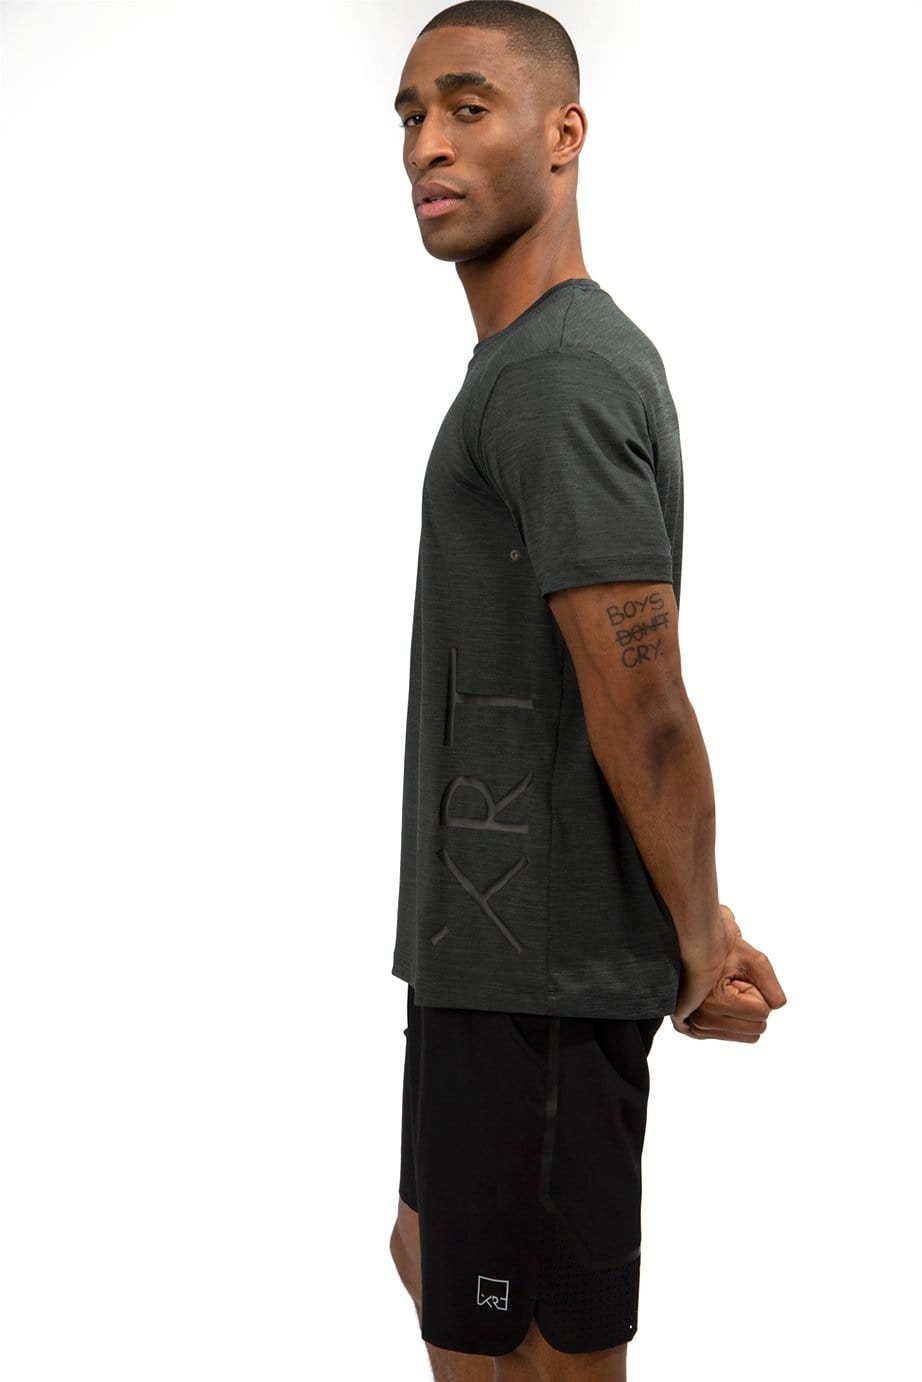 XRT black sport t-shirt for men